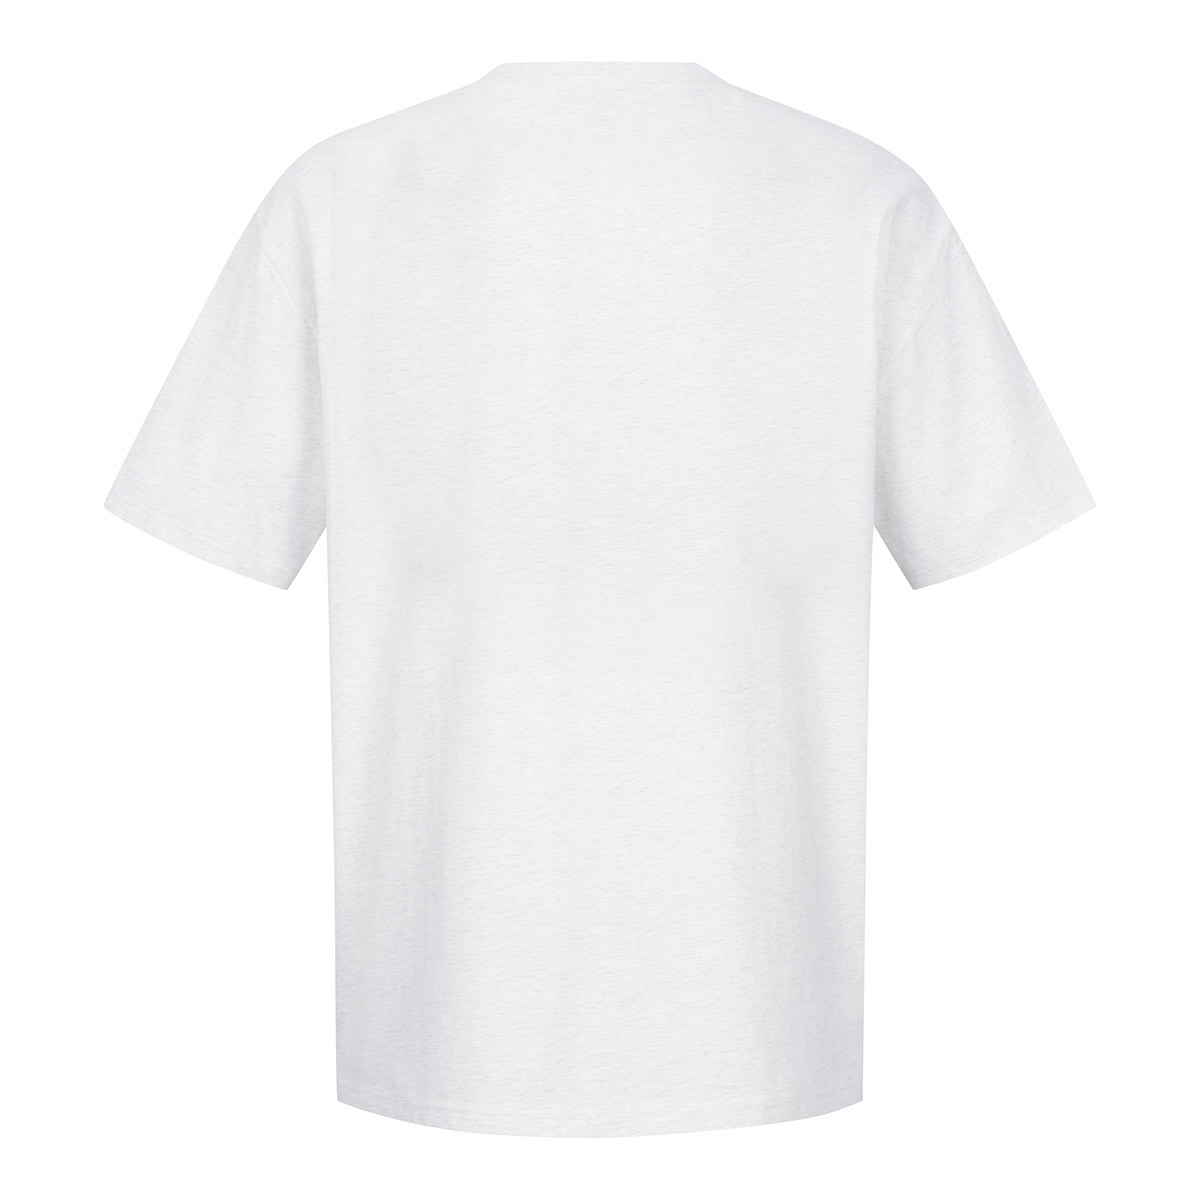 쿨트 성인 반소매 티셔츠 - 화이트